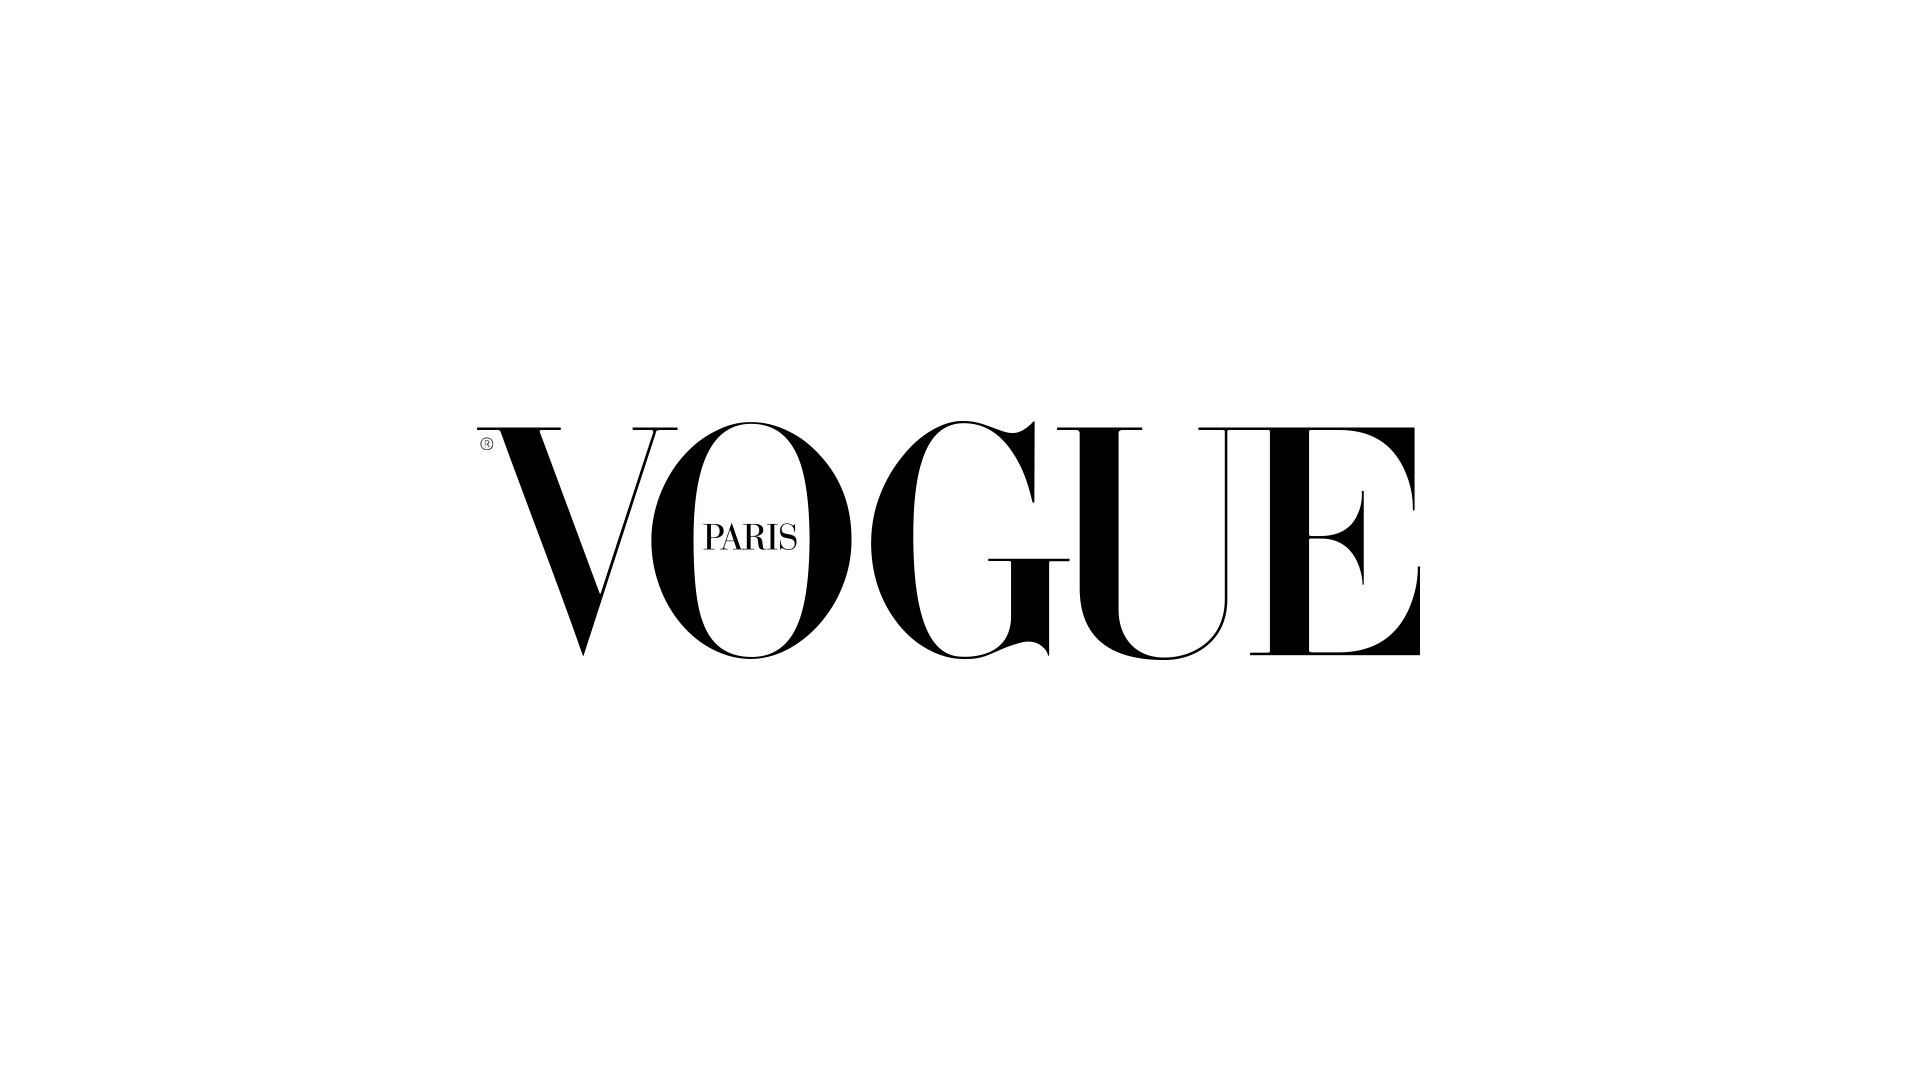 The logo for vogue magazine - Vogue